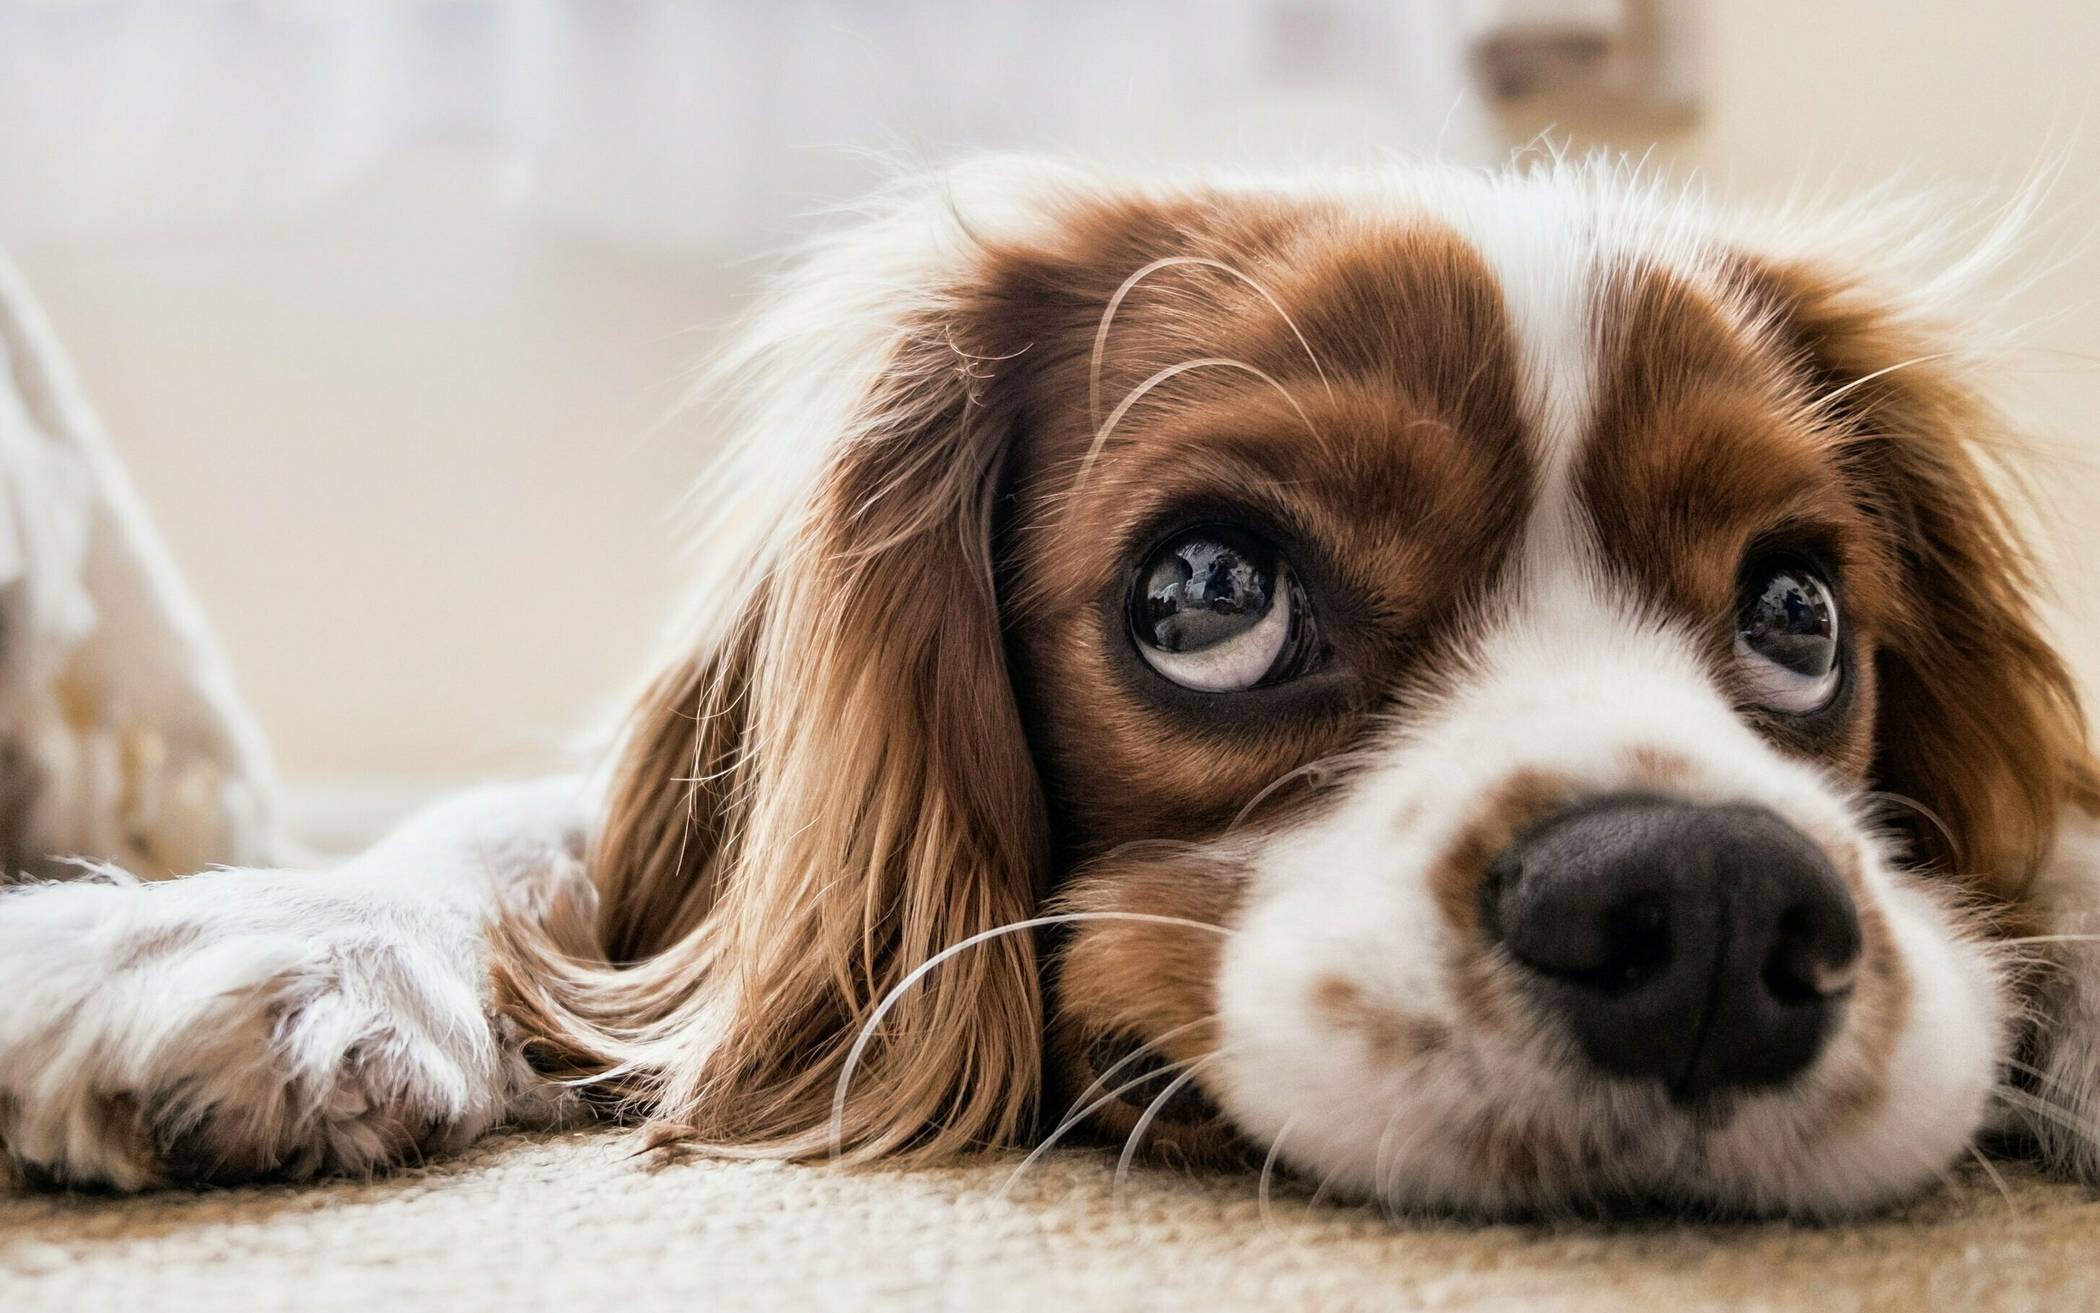 Besonders Tierversuche an Hunden stehen im Fokus des Trauermarsches  der ÄgT.